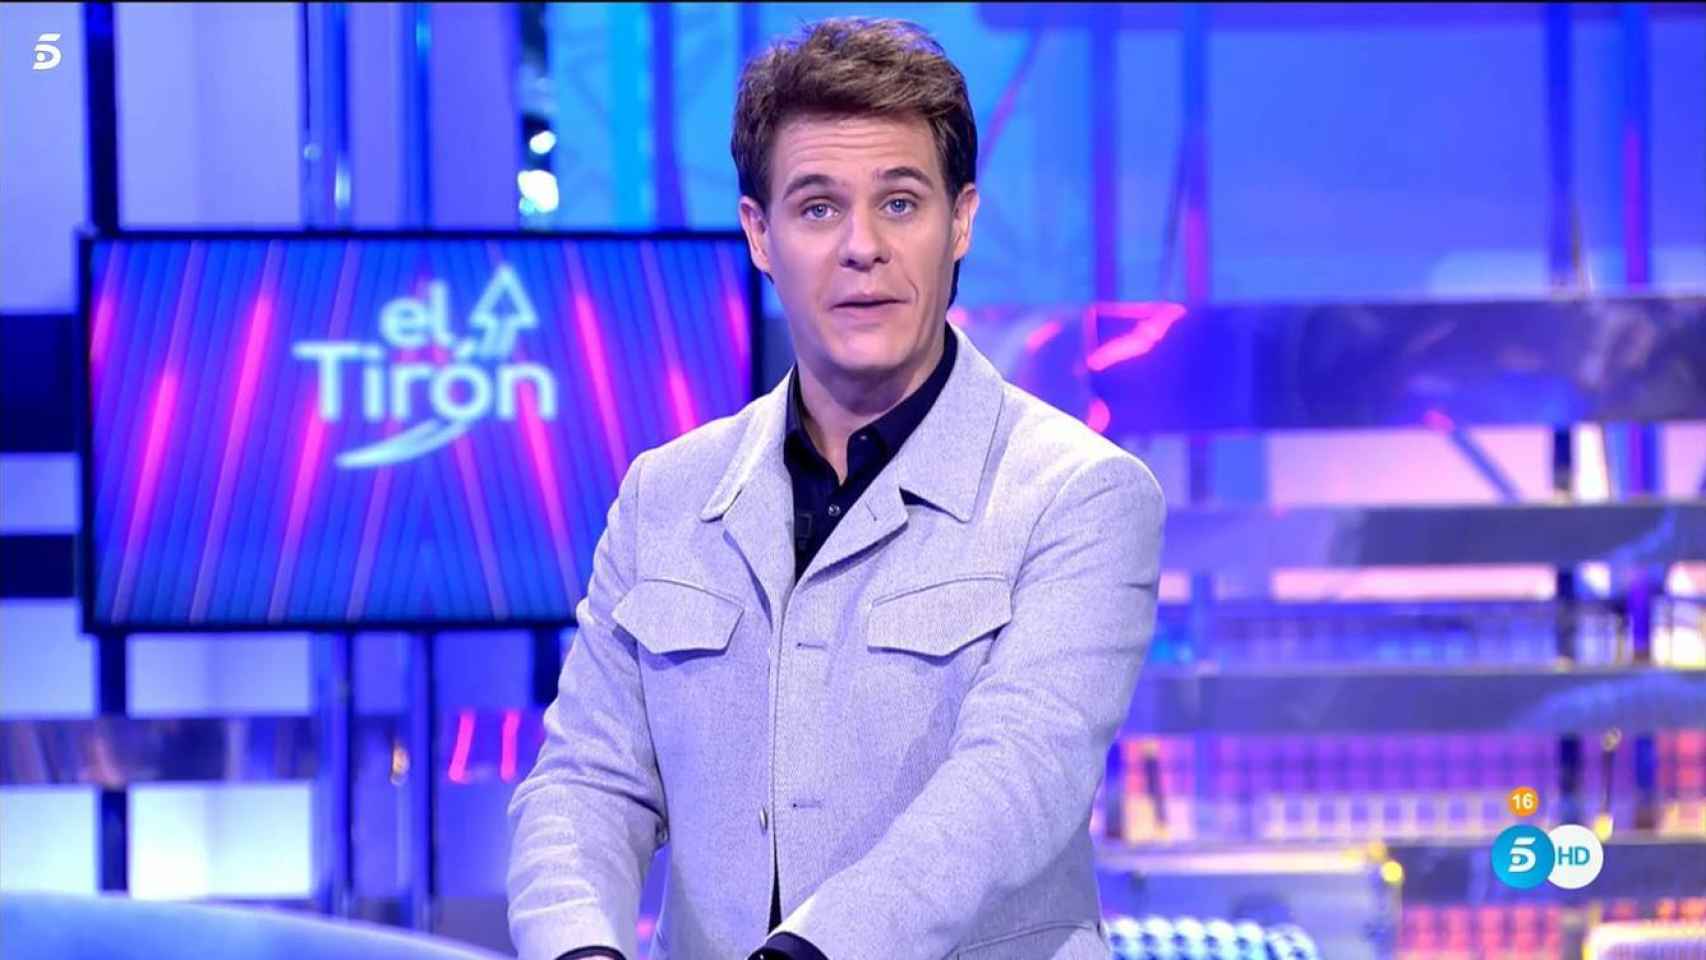 'El tirón' fue el último programa que presentó Gálvez en Telecinco.